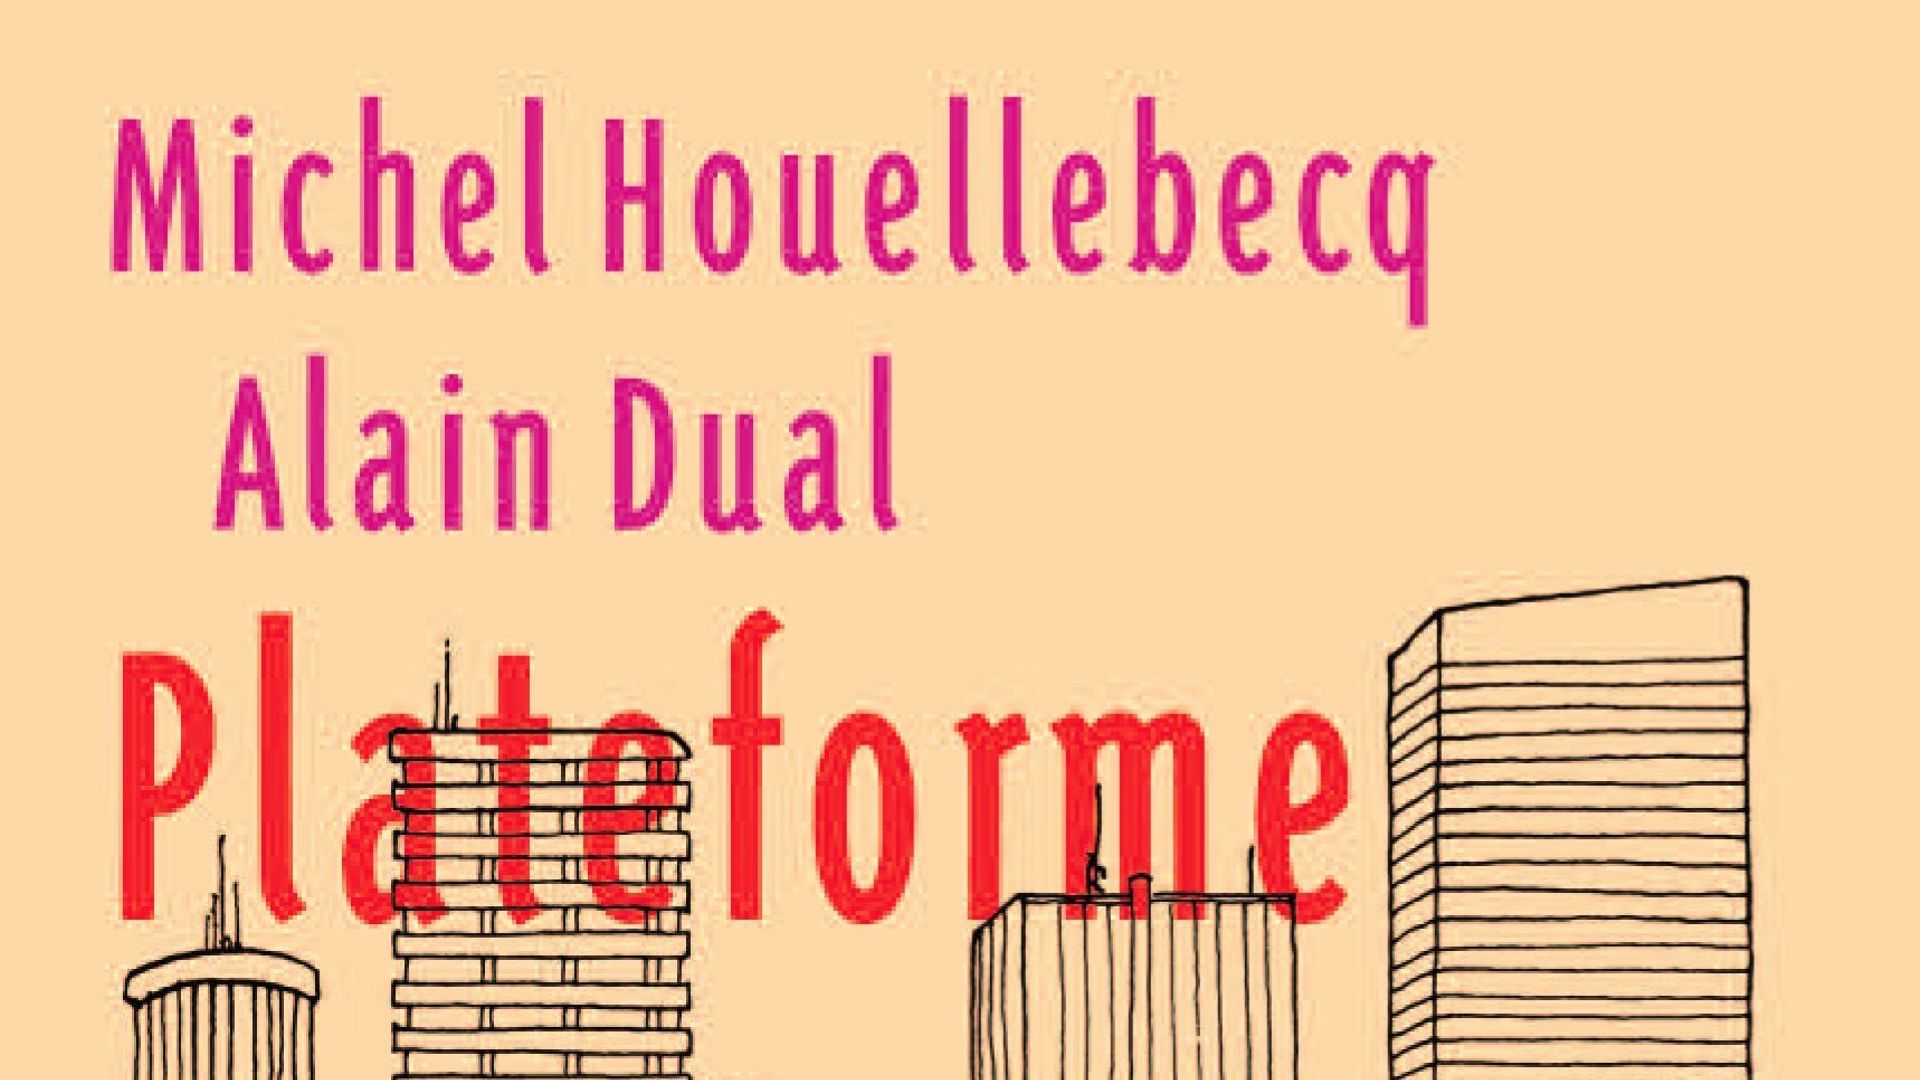 'Plateforme' de Michel Houellebecq et Alain Dual